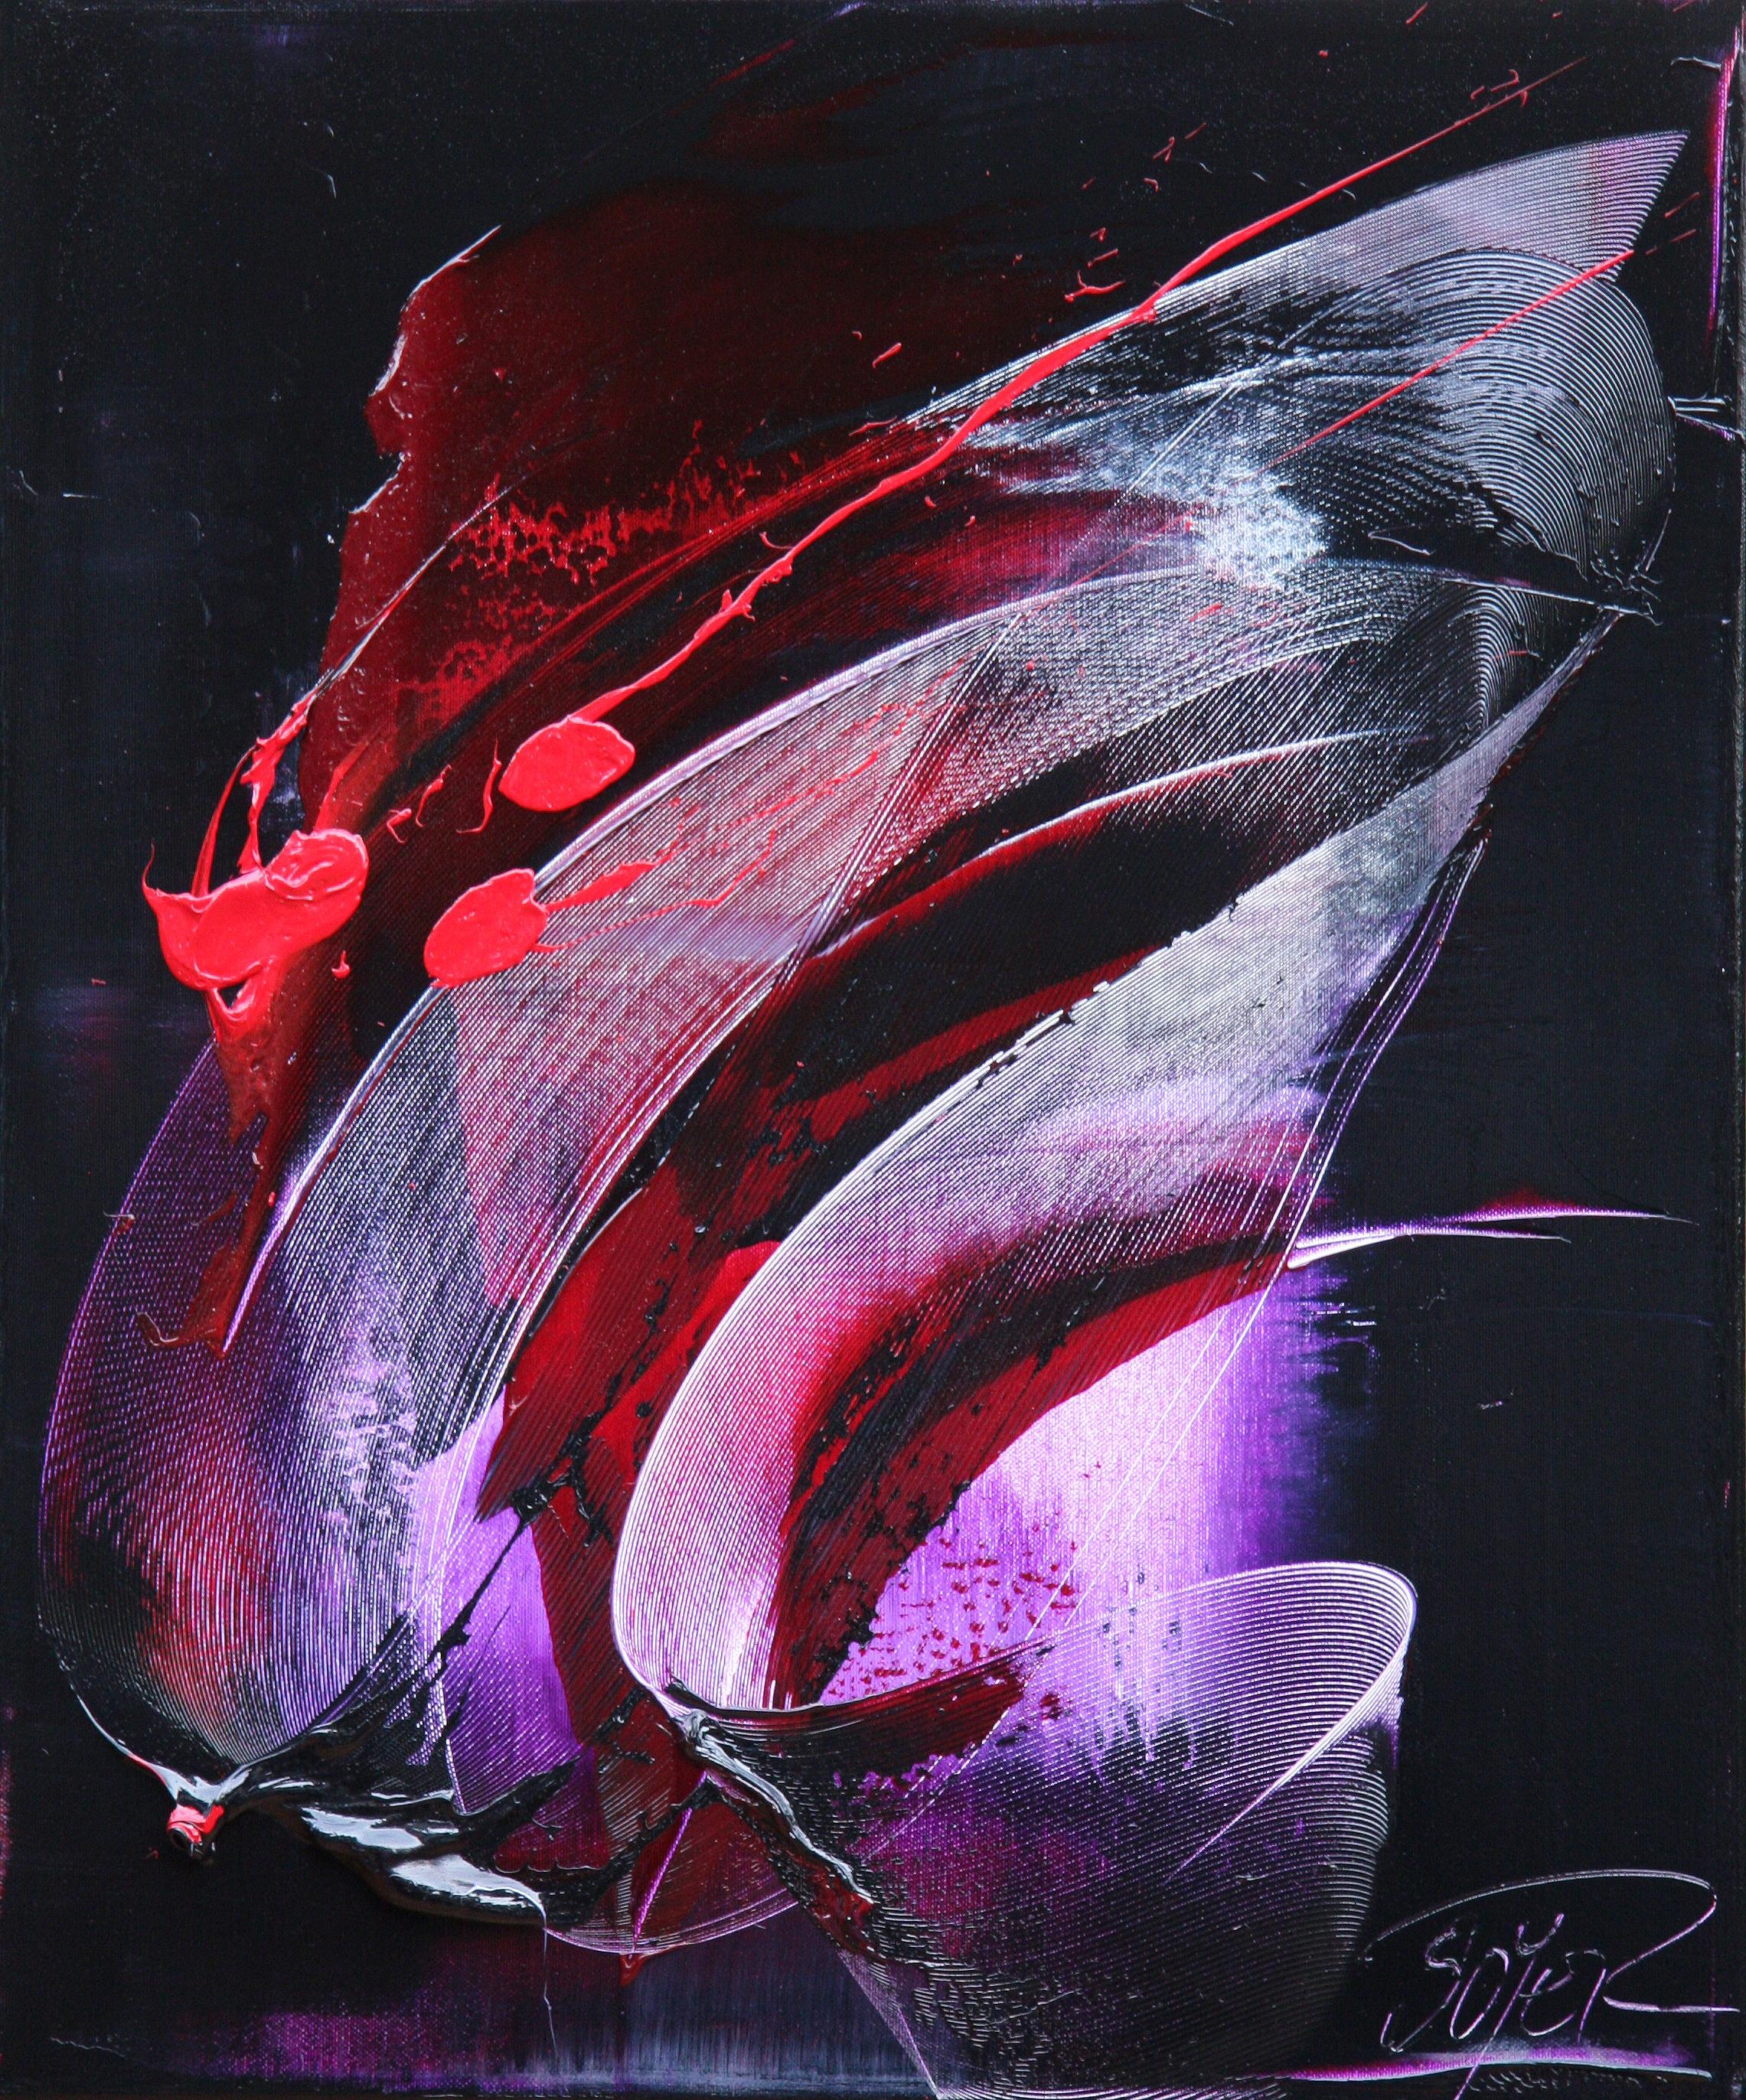 Jean Soyer Abstract Painting – Abstraktes Ölgemälde mit roten Flecken auf dunklem Hintergrund in gesprenkelter Lila